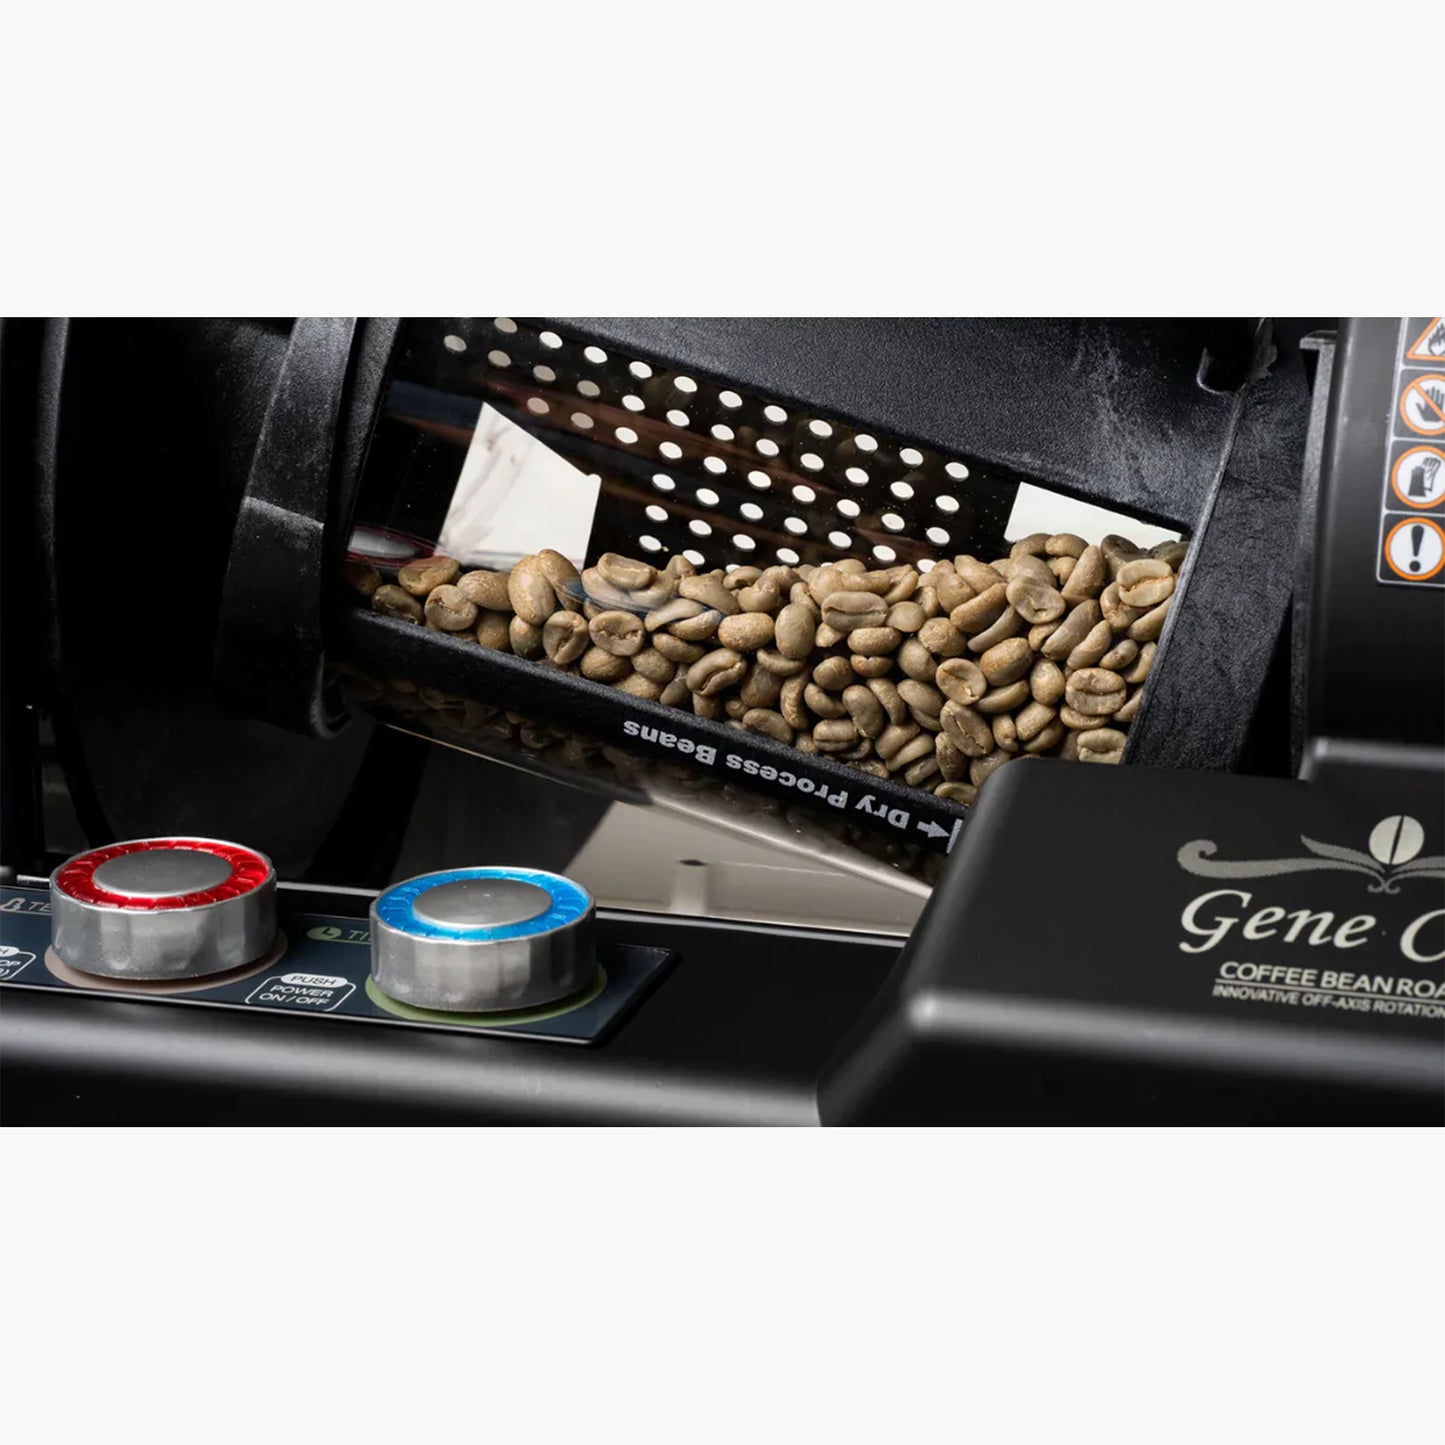 
                  
                    家用咖啡烘焙机 - Gene Café CBR-101 - 黑色
                  
                